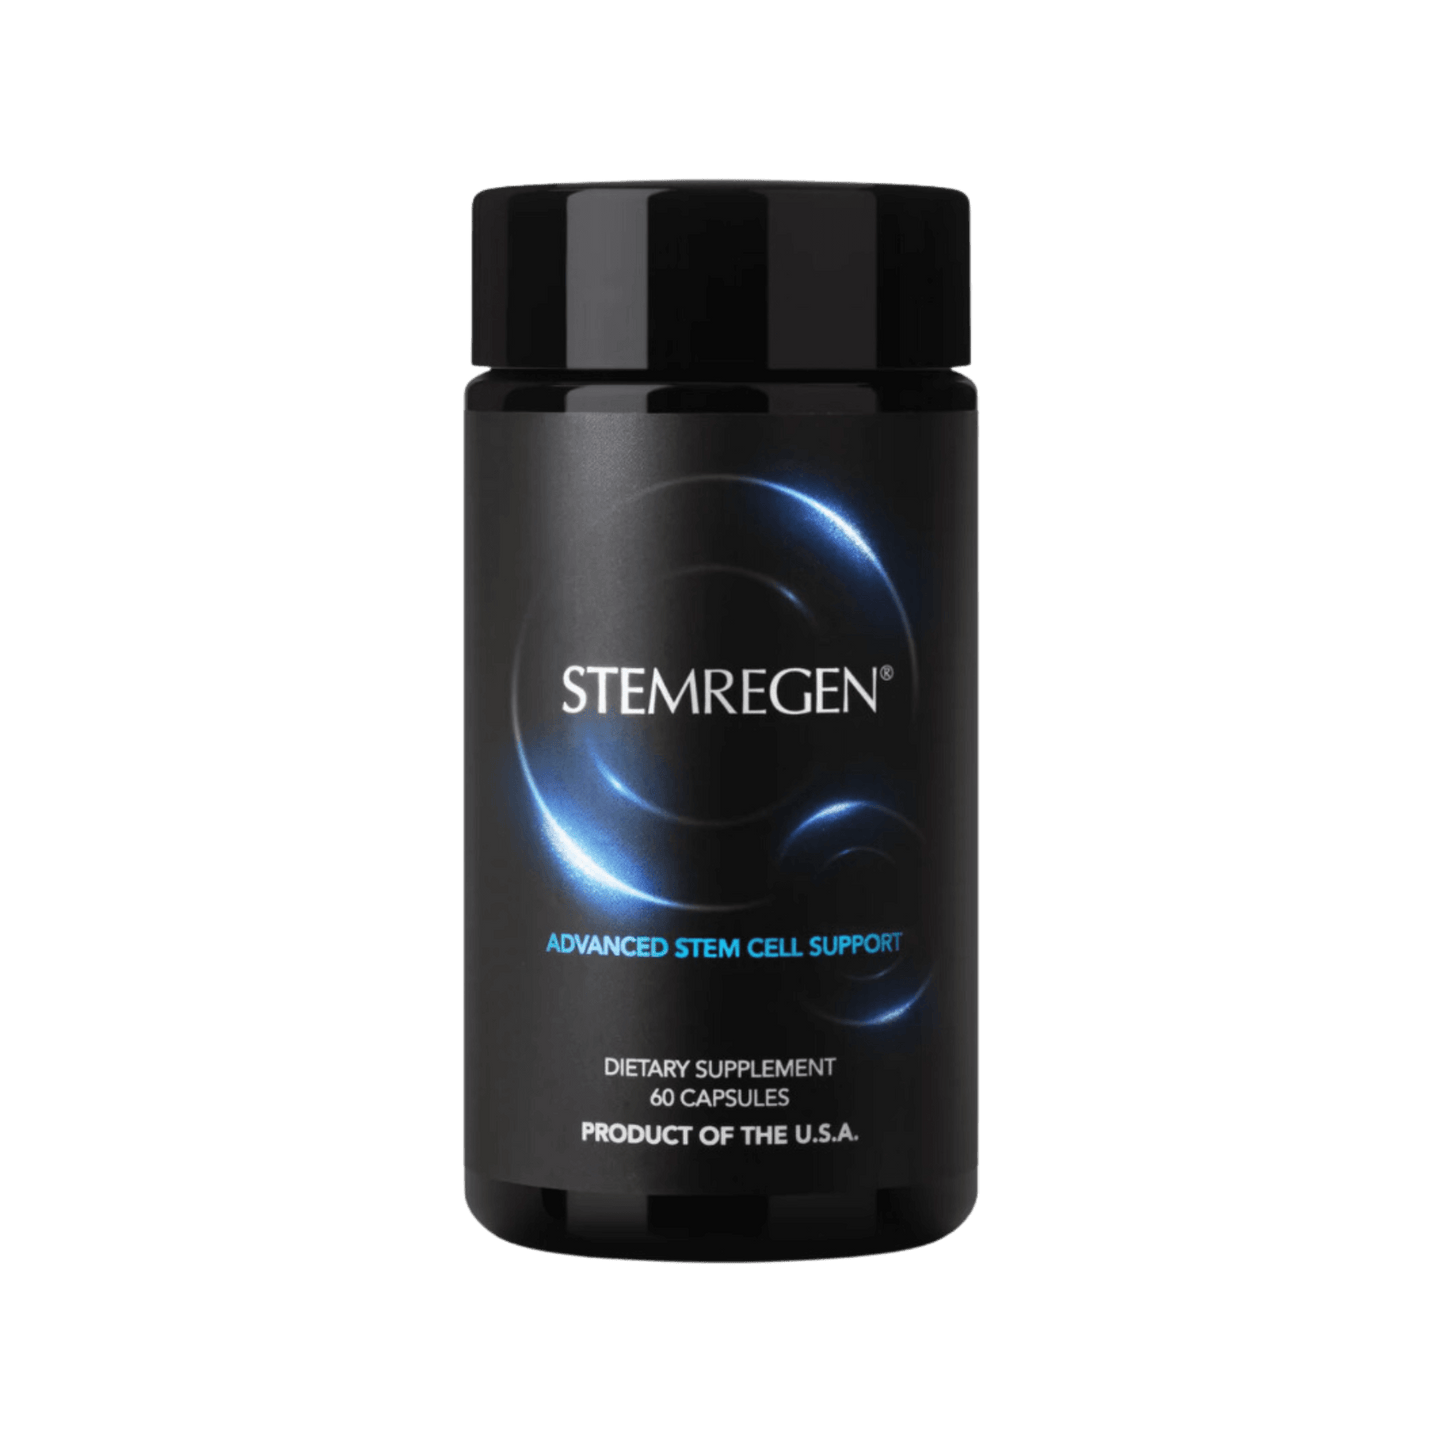 Image of Stemregen stem cell report black bottle